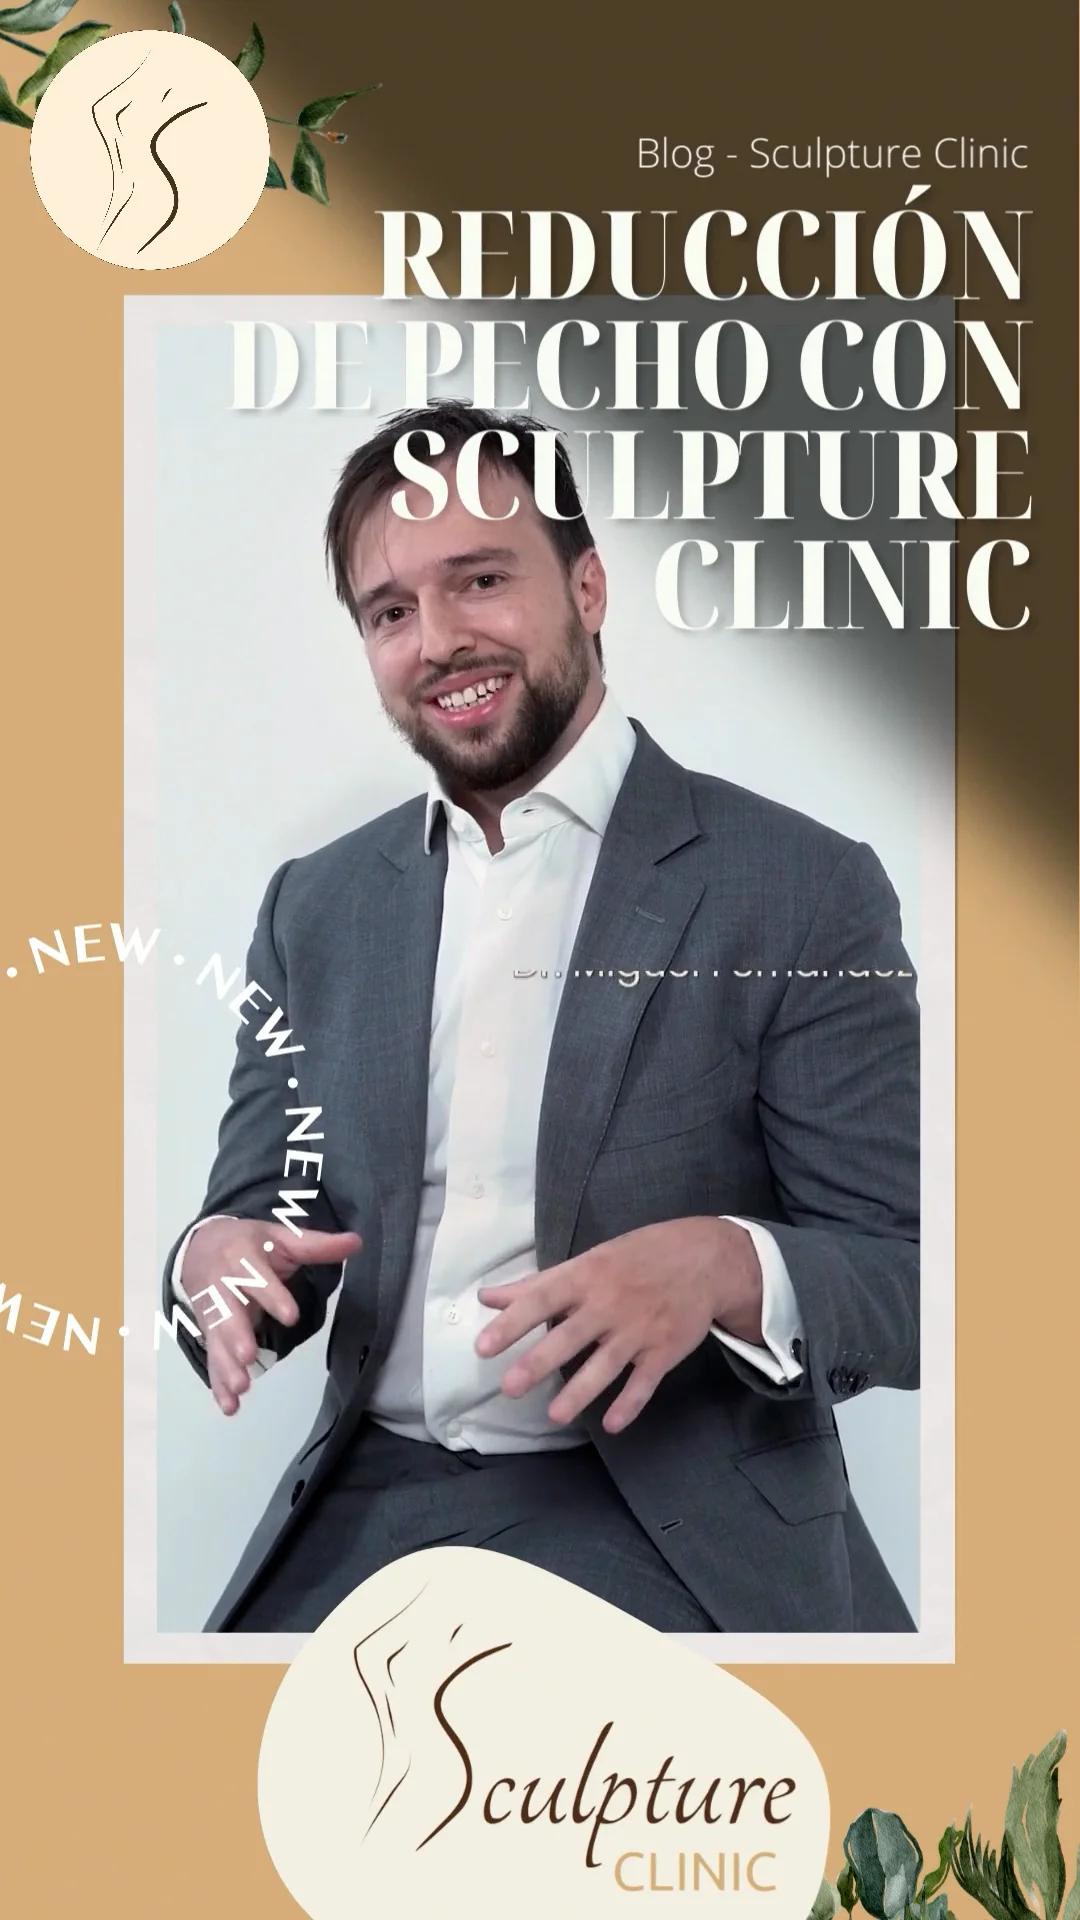 Sculpture Clinic